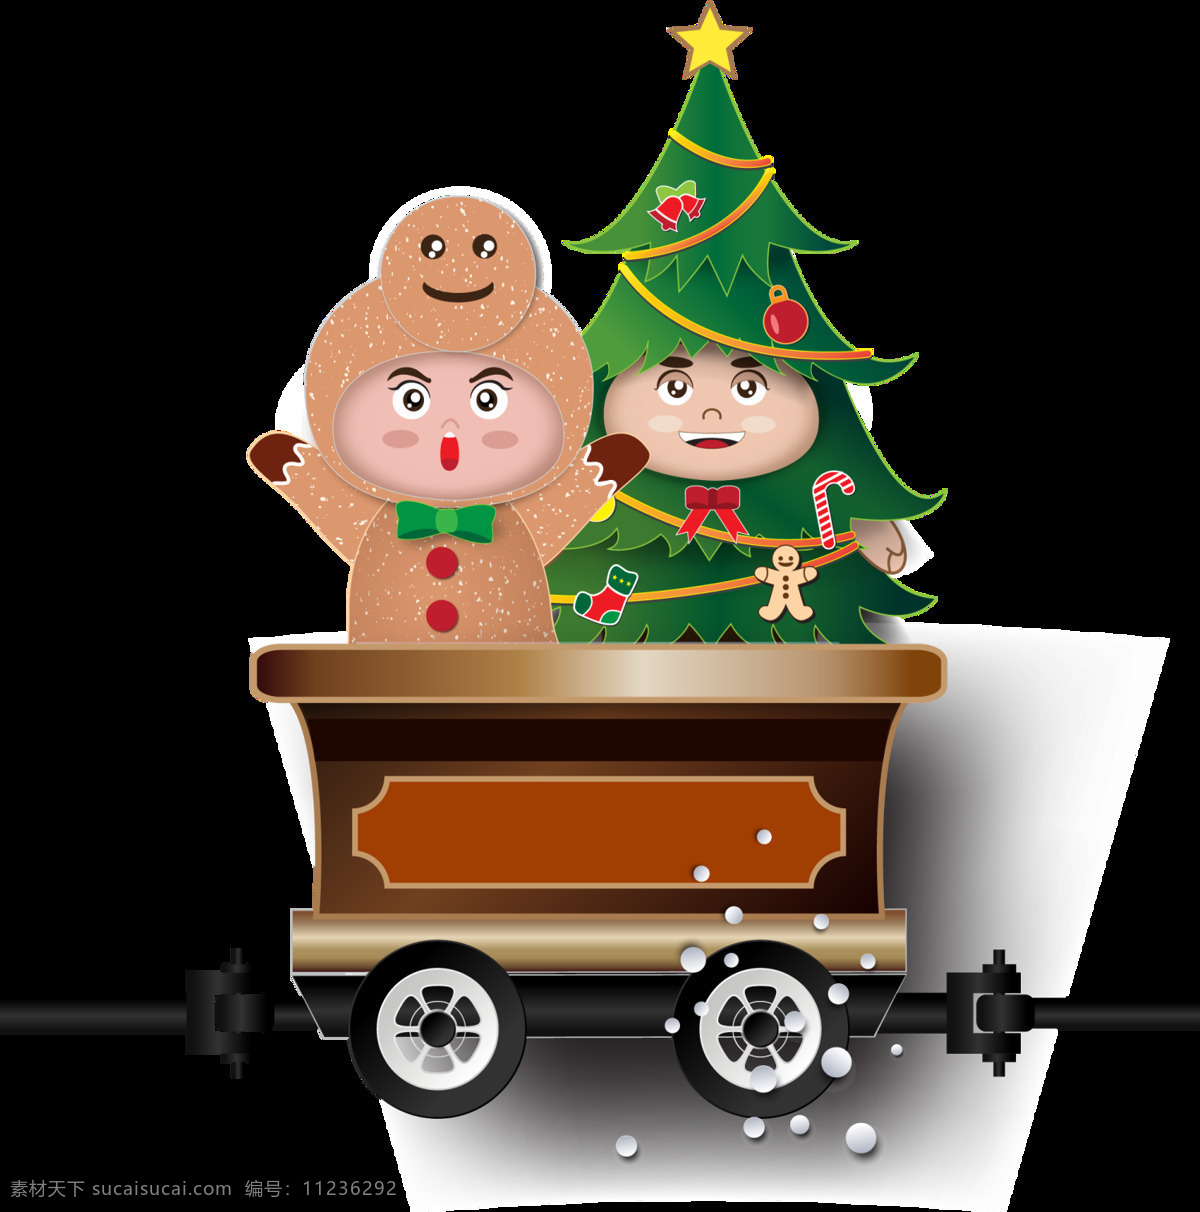 手绘 火车 圣诞树 元素 png元素 奔跑 免抠元素 圣诞节 透明元素